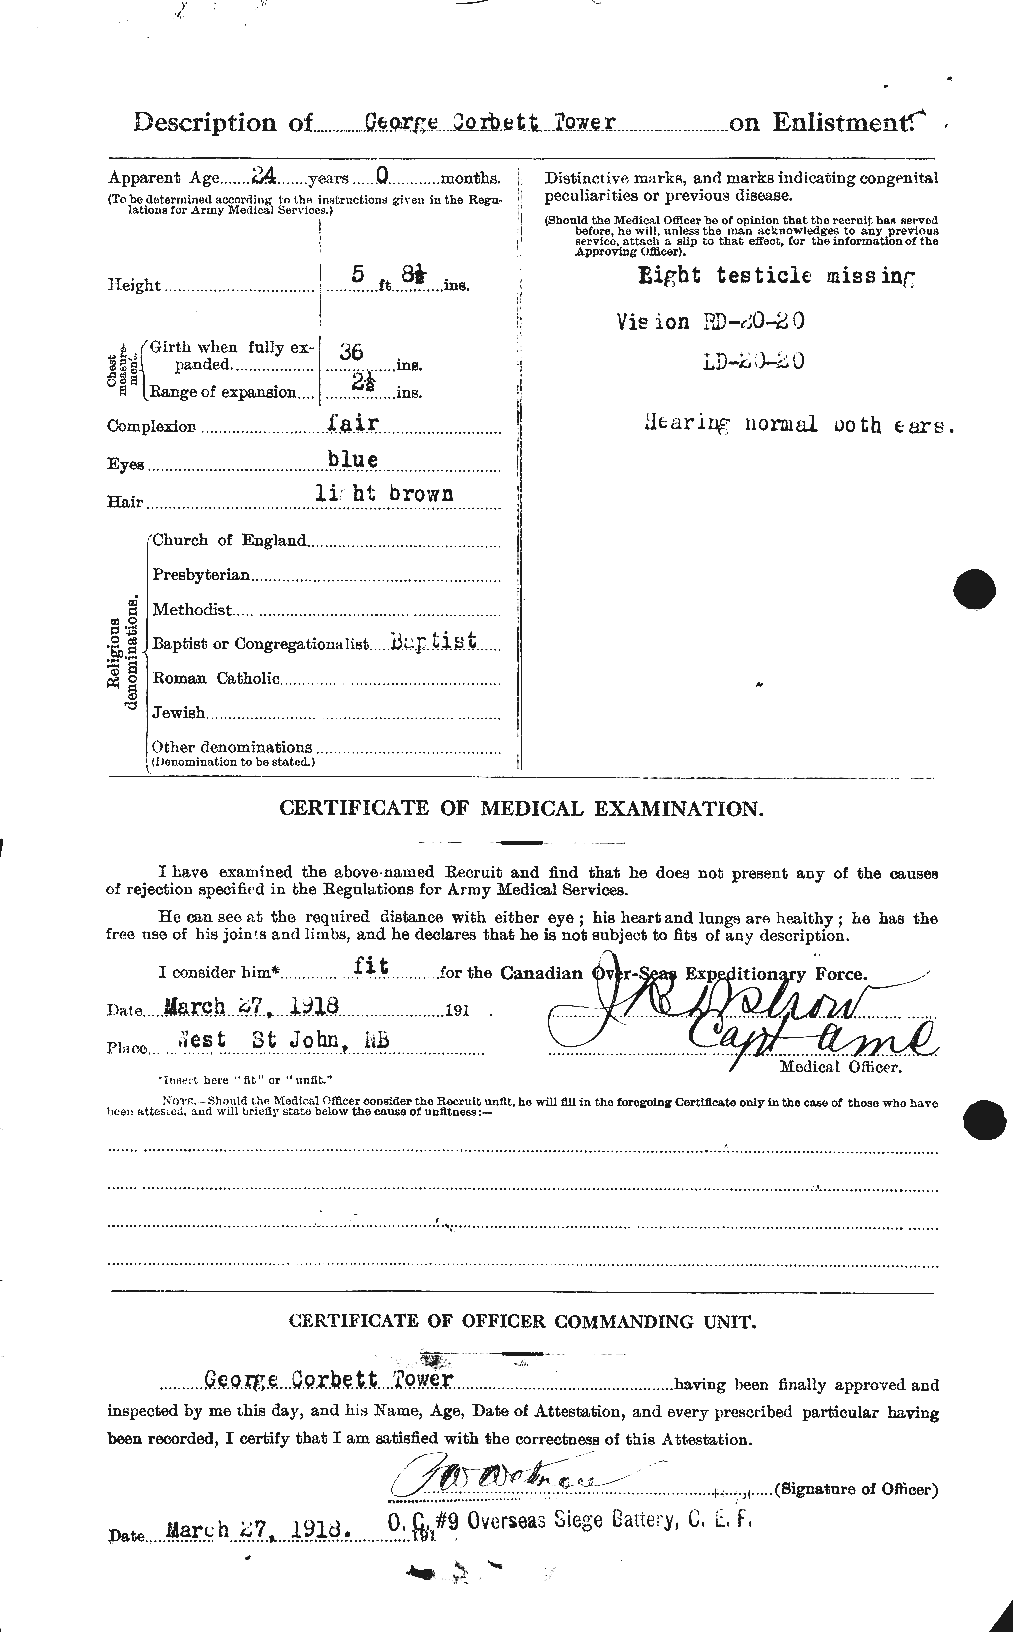 Dossiers du Personnel de la Première Guerre mondiale - CEC 636192b